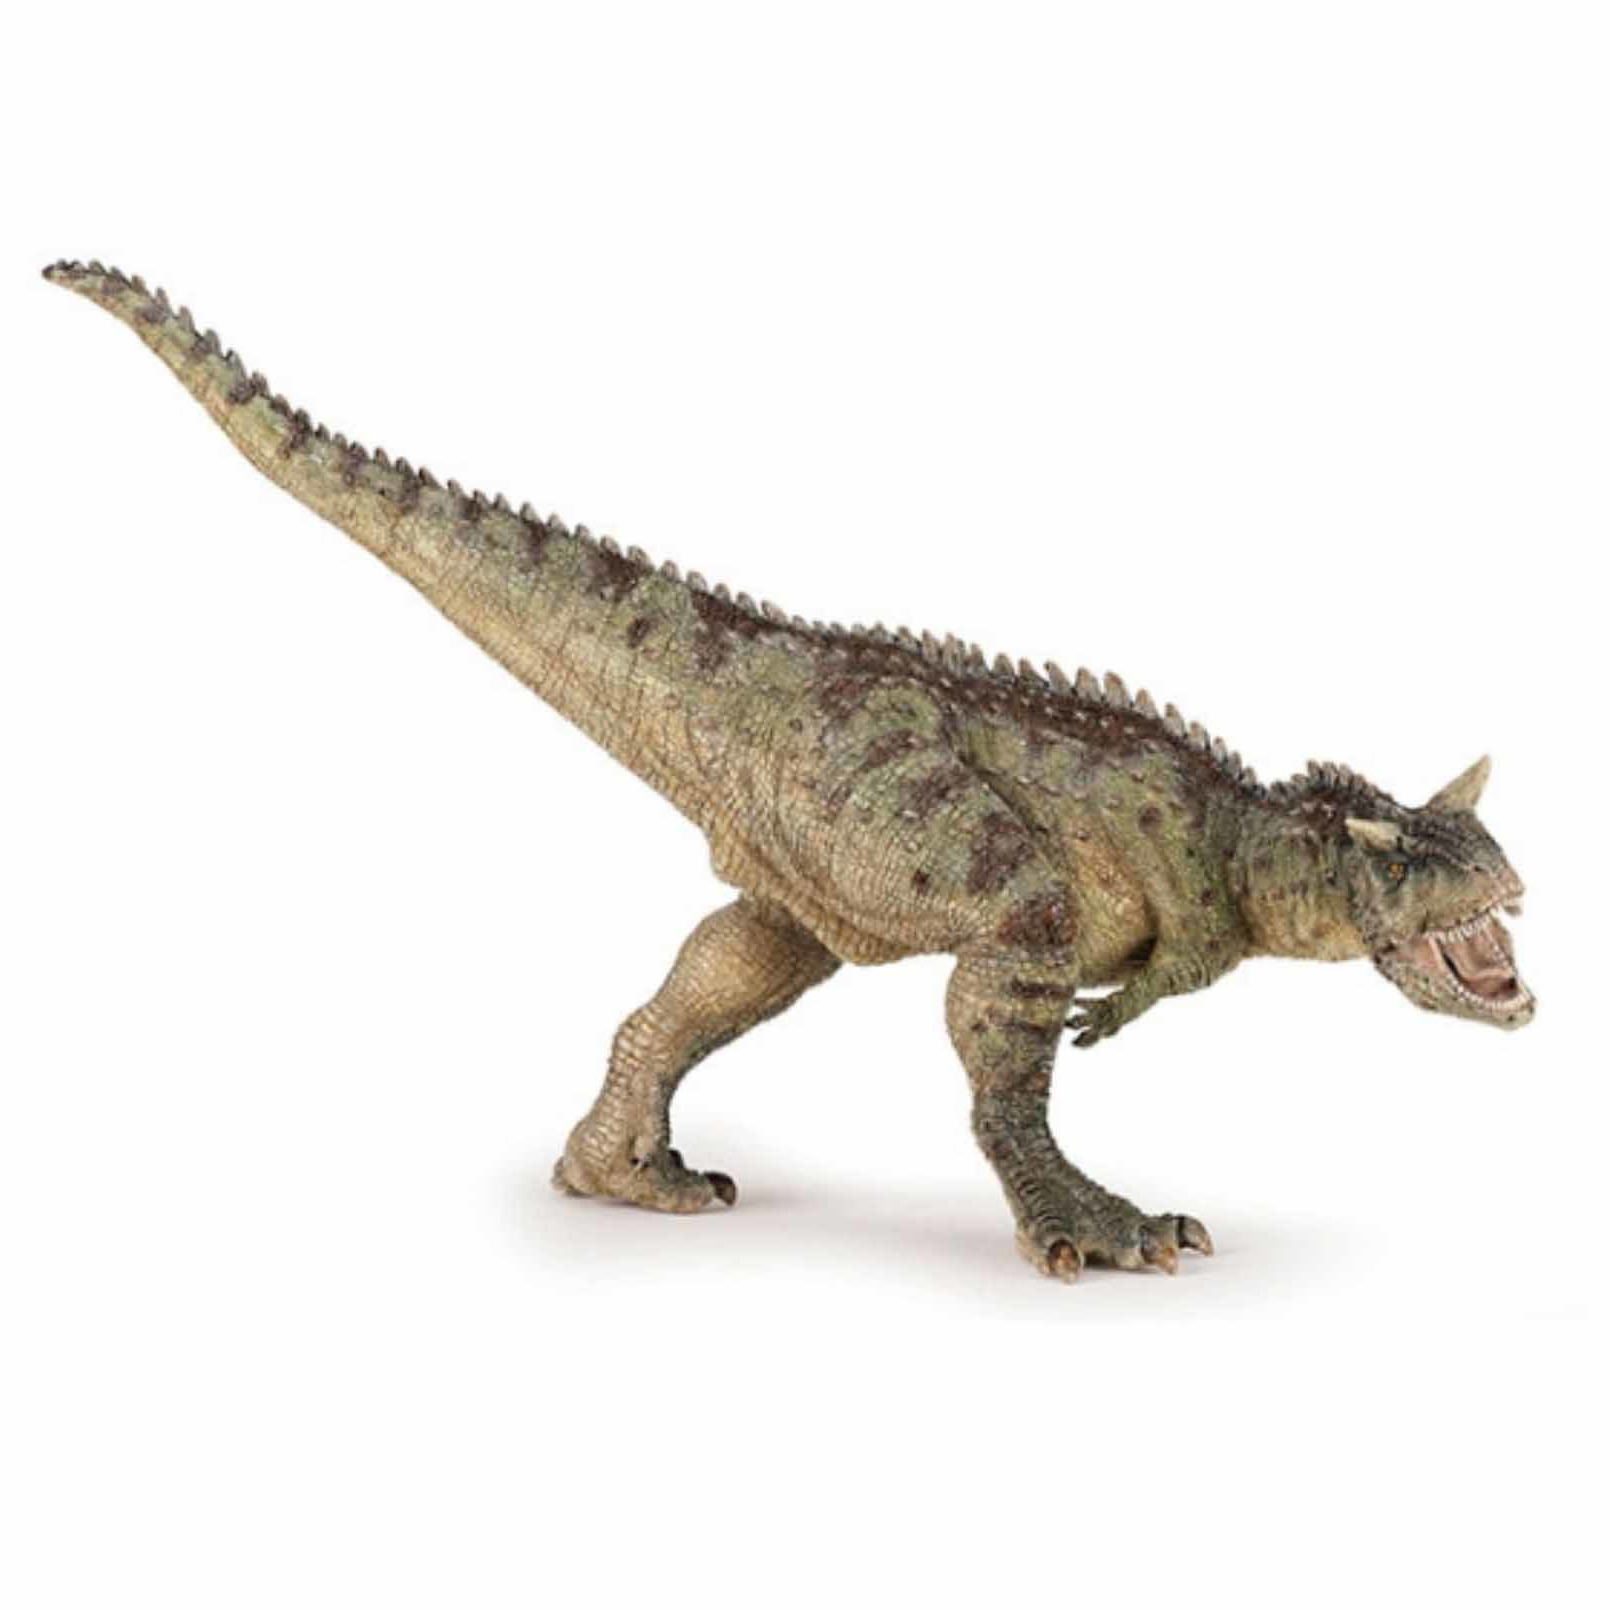 Afbeelding Plastic speelfiguur carnotaurus dinosaurus 19 cm door Animals Giftshop